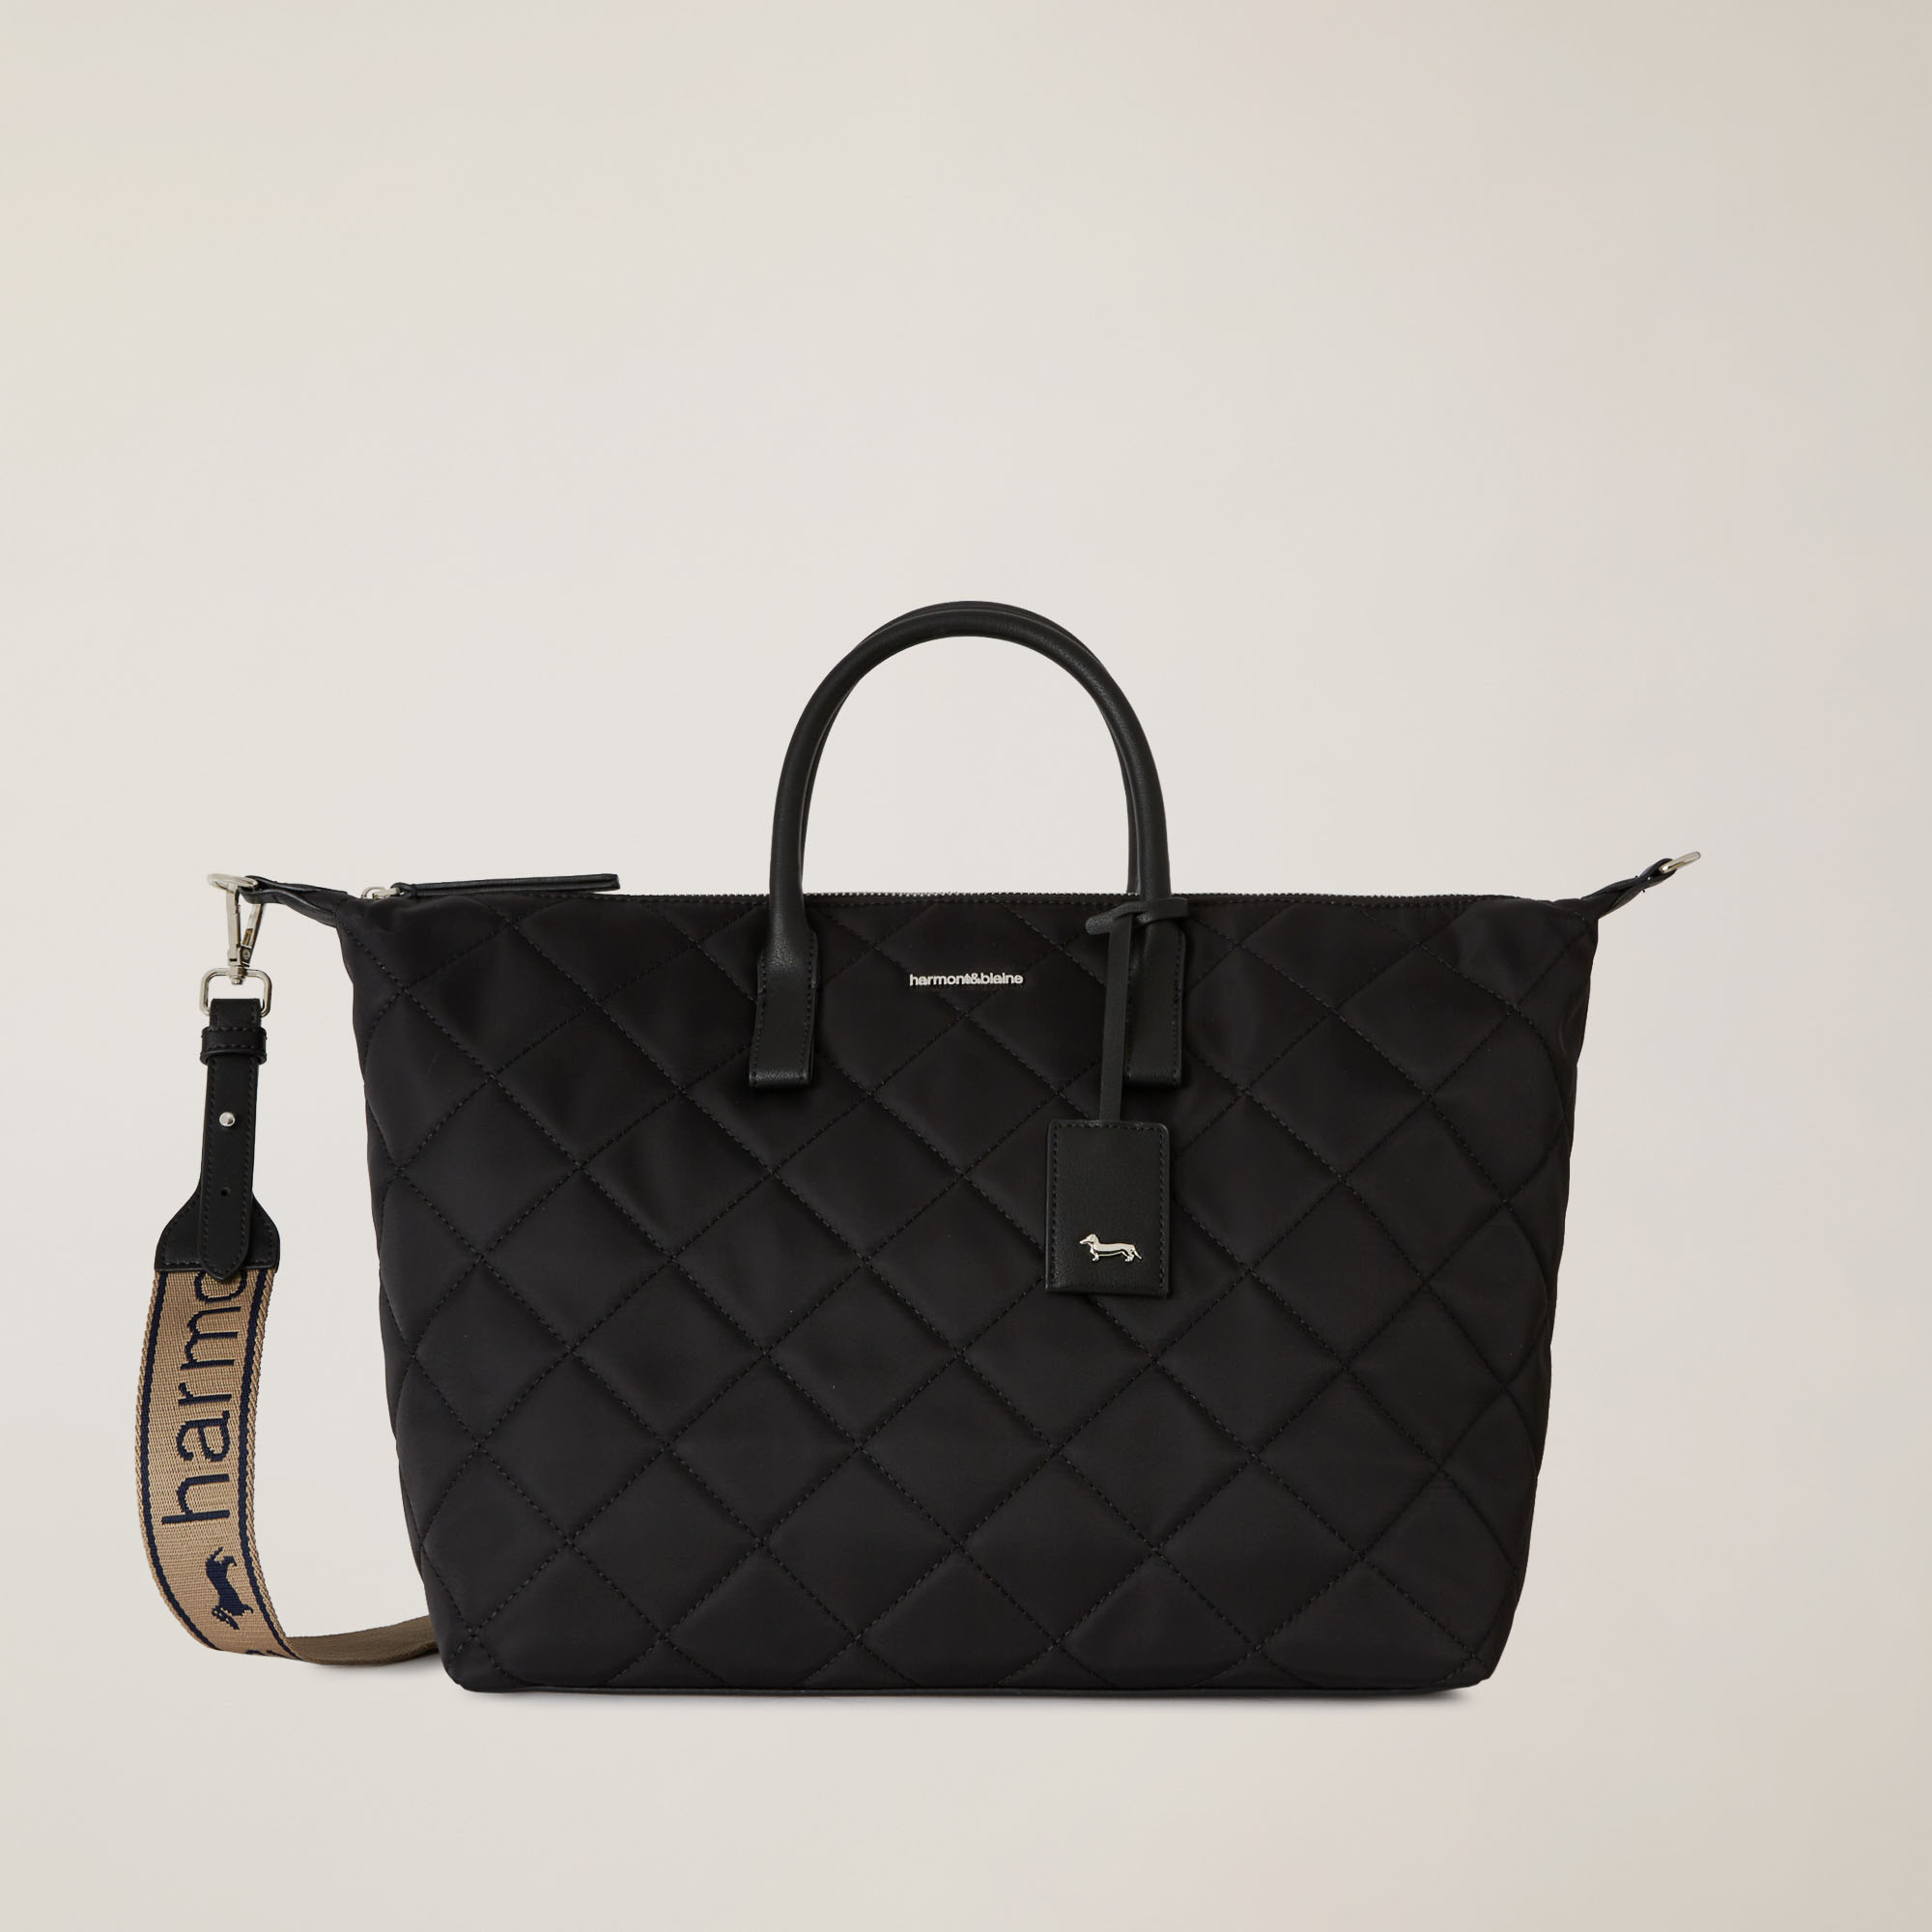 Quilted Shopper Bag With Removable Shoulder Strap, Black, large